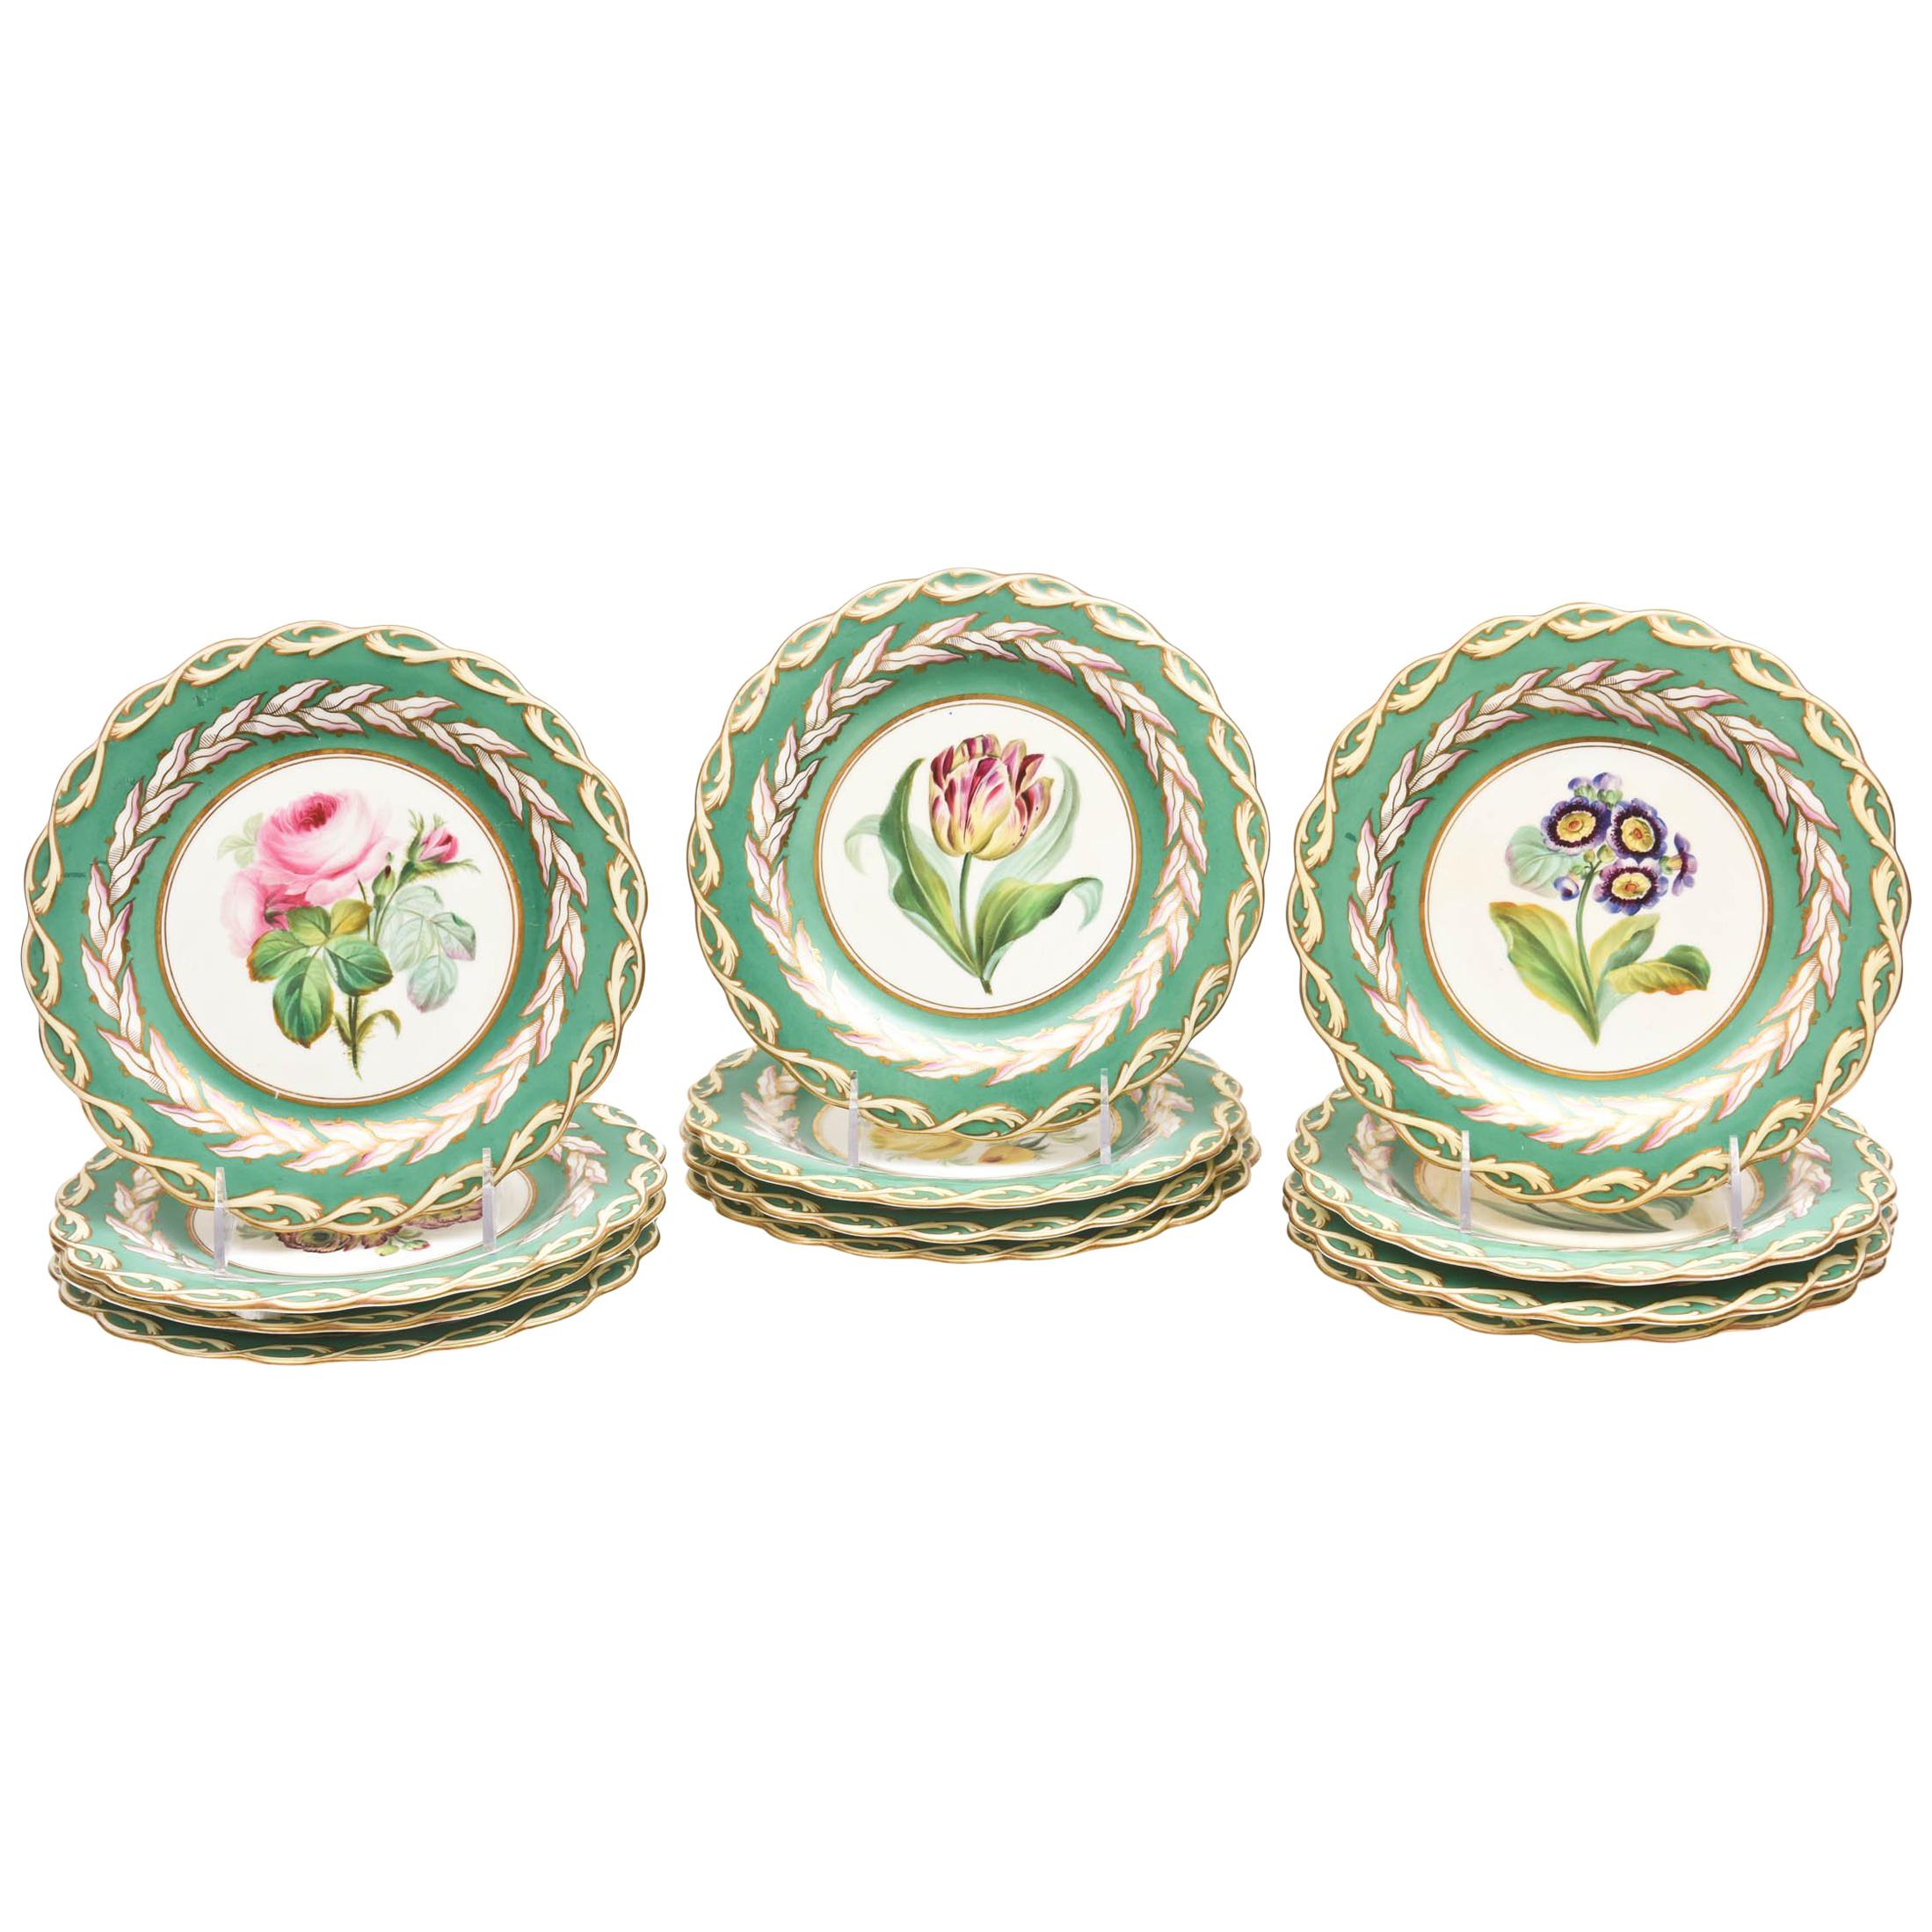 12 Antique Botanical Plates, English Porcelain 19th Century Handpainted Florals